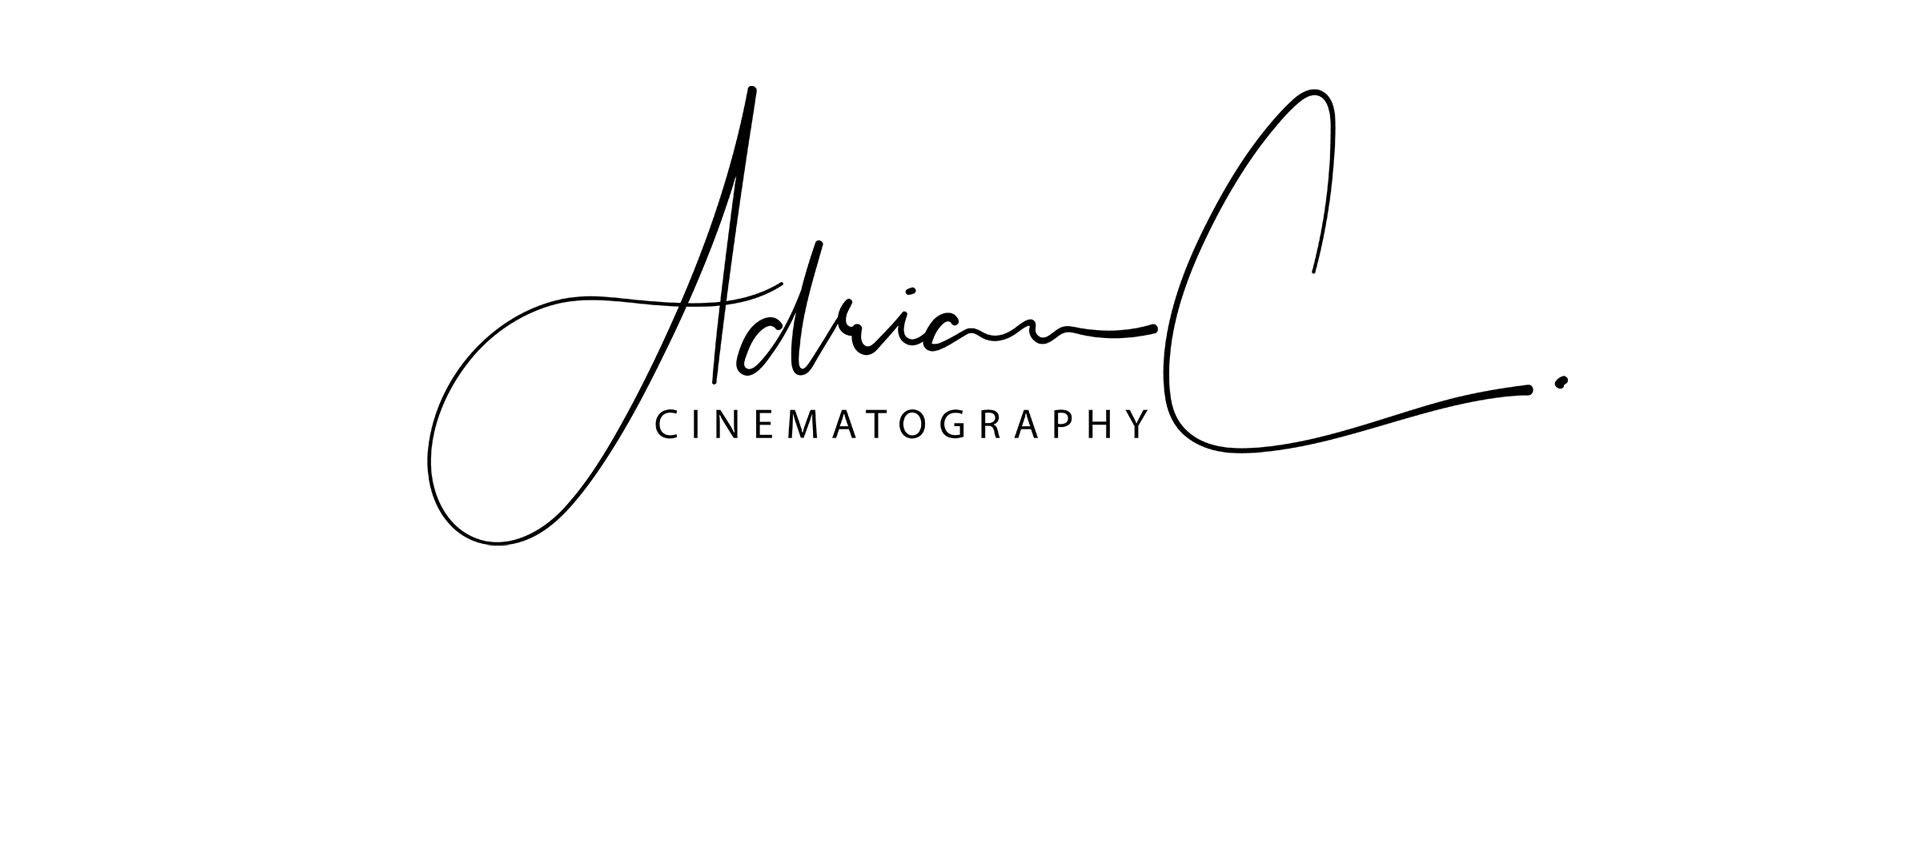 Cinematographer Logo - Singapore Wedding Videographer | Videography | Cinematographer ...